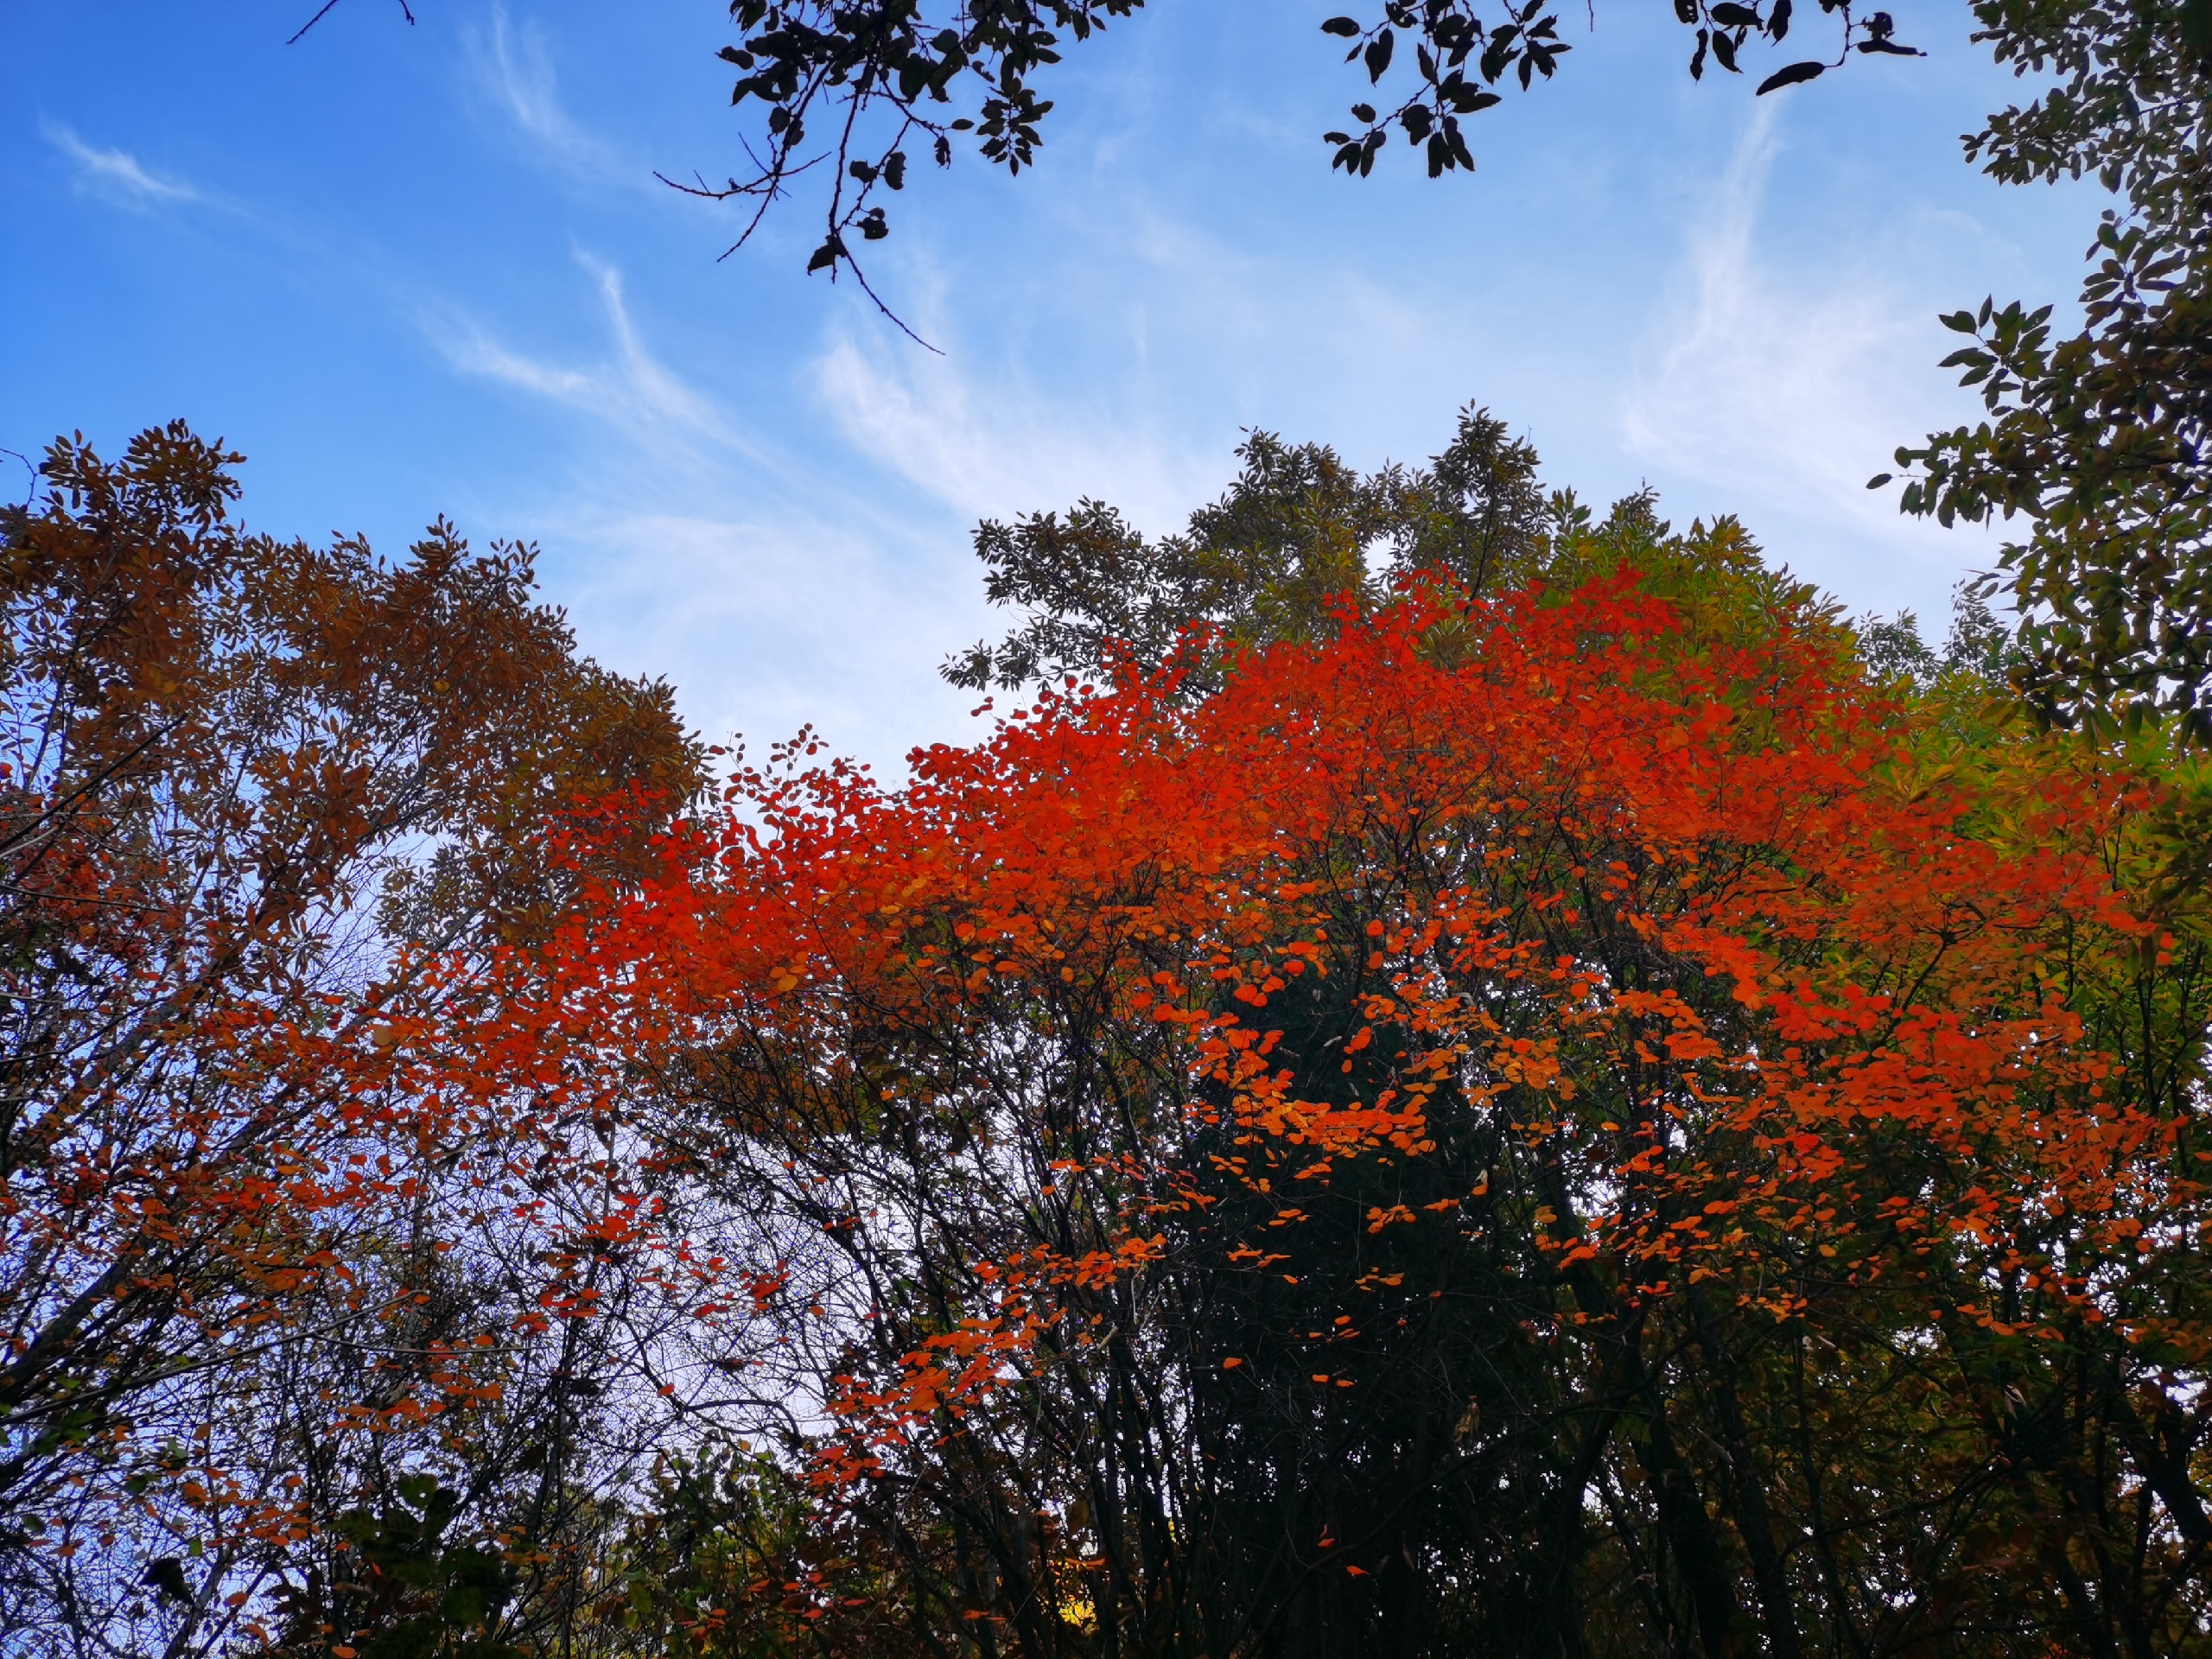 嘉午台，看满山红叶，应该是这个秋天累并幸福的一件事情